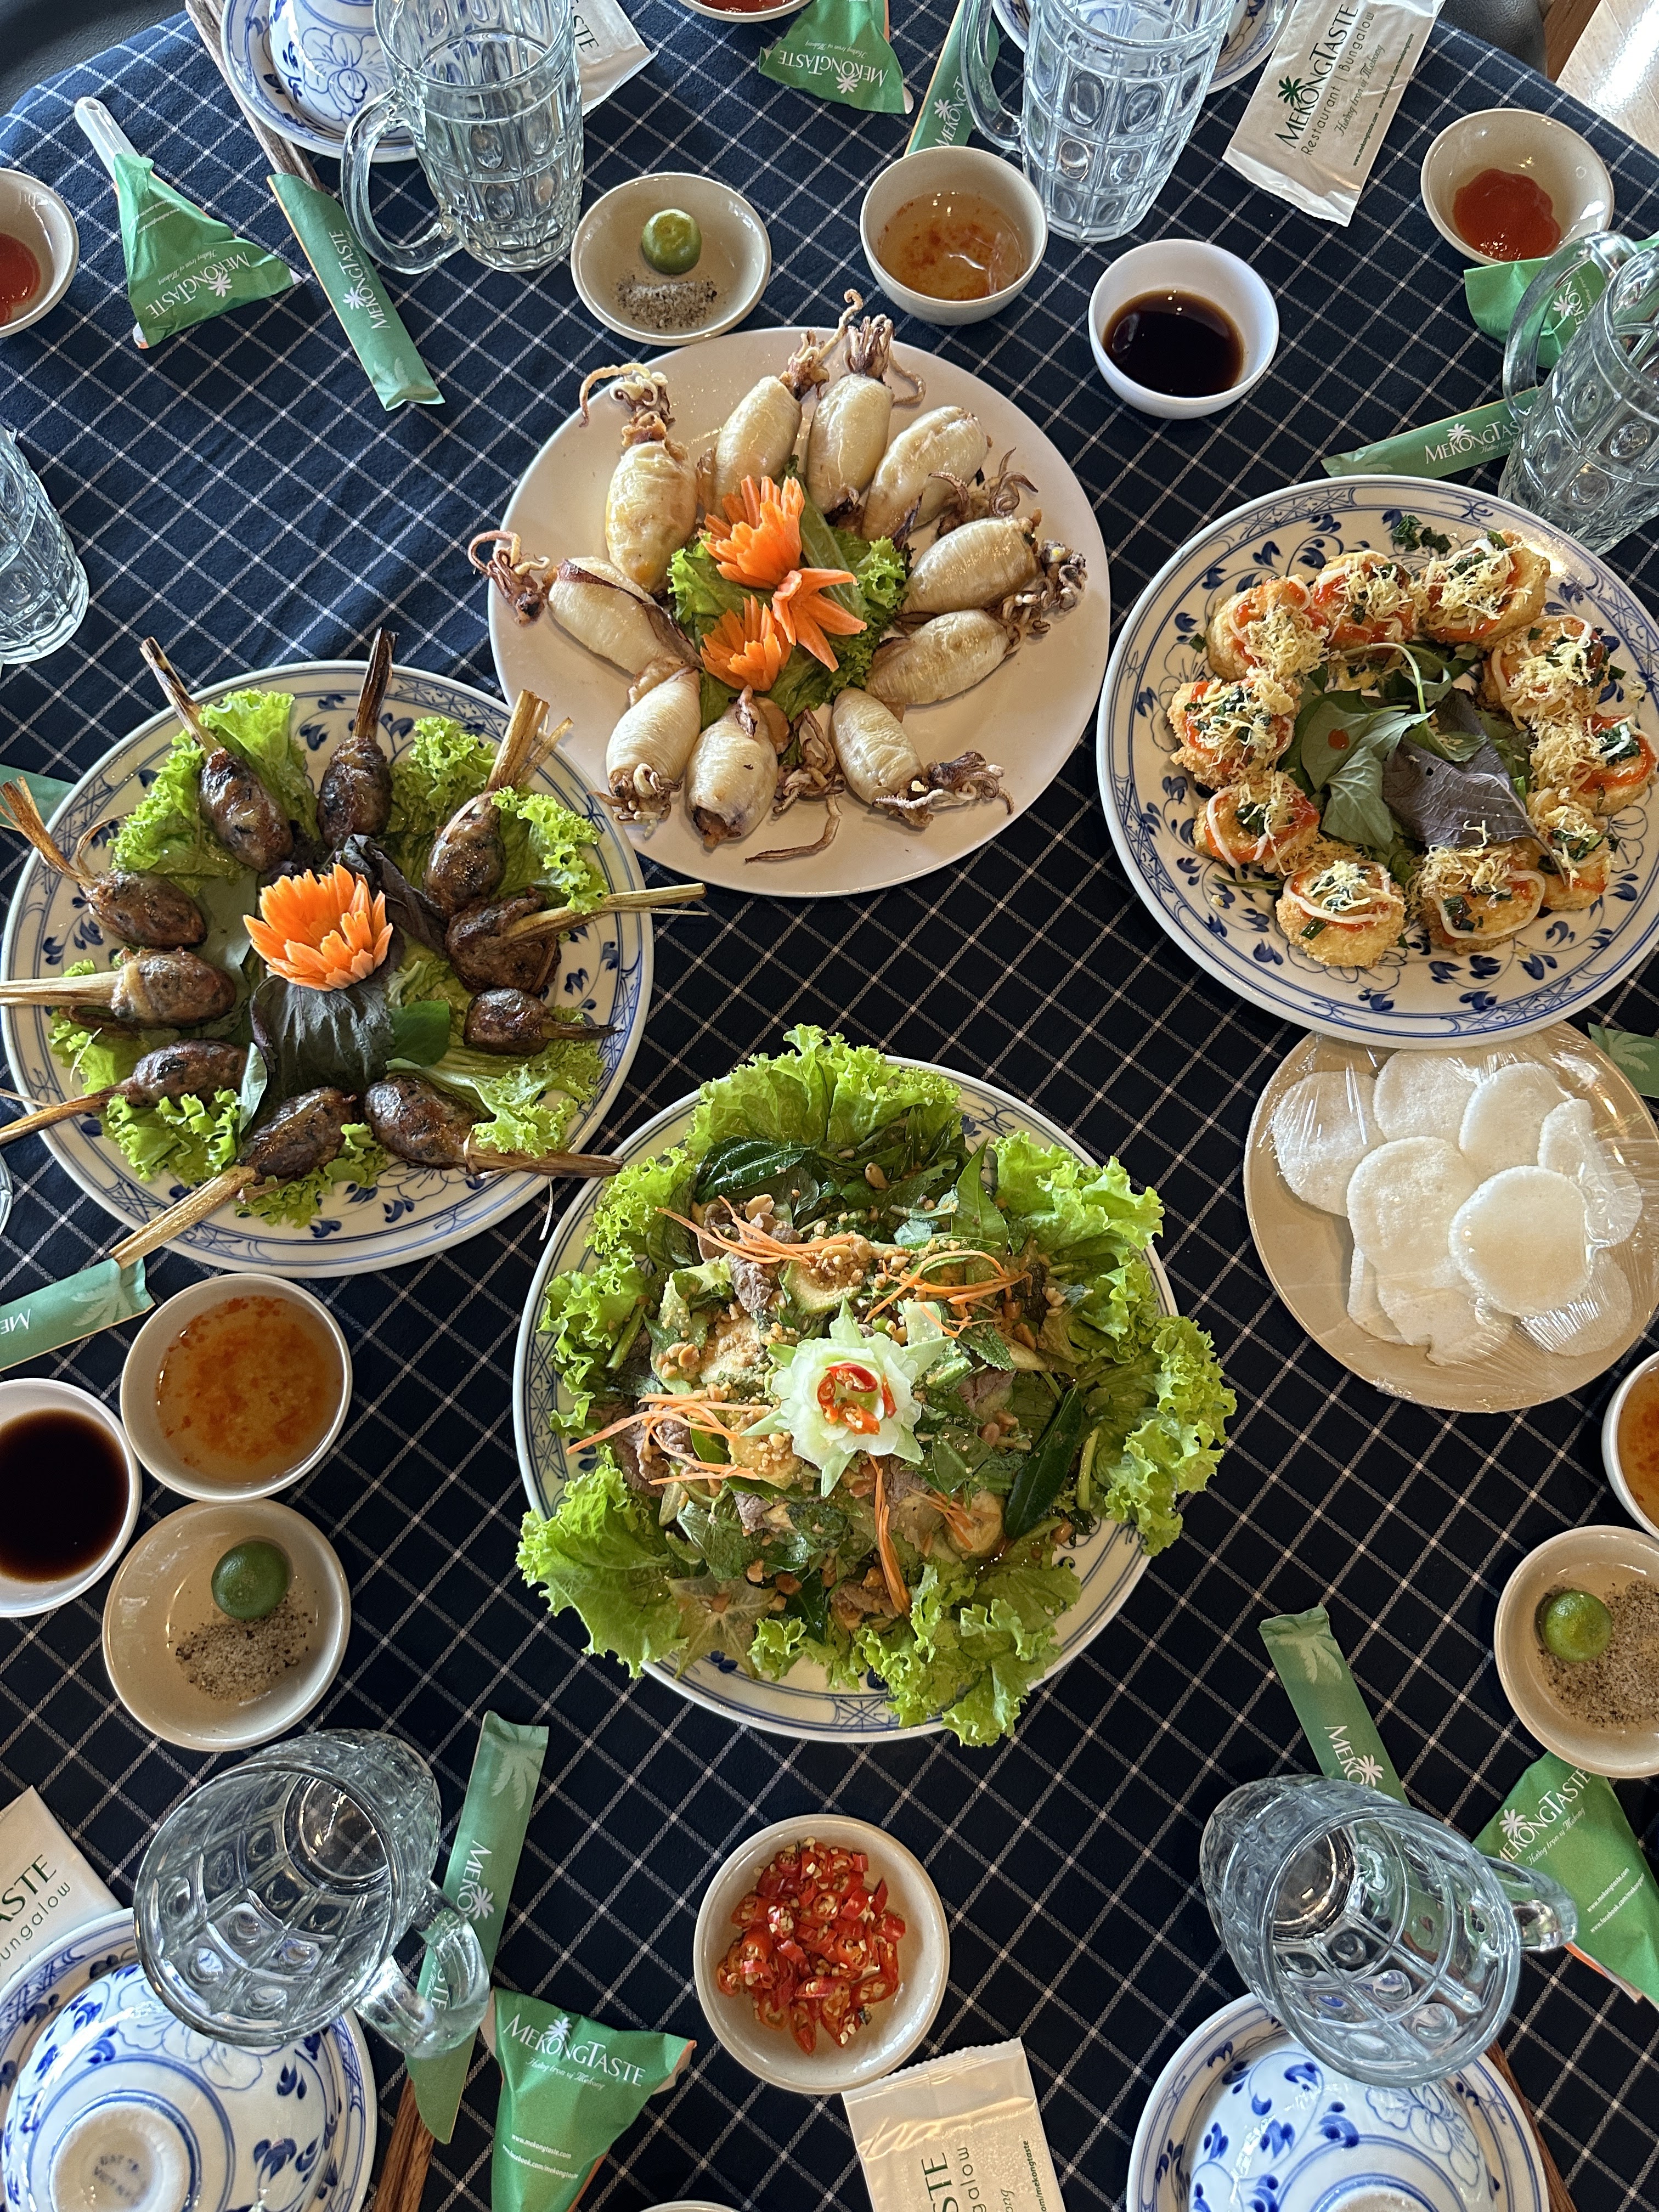 Comida Vietnamita Vs la Comida Coreana - Blog Maravilloso